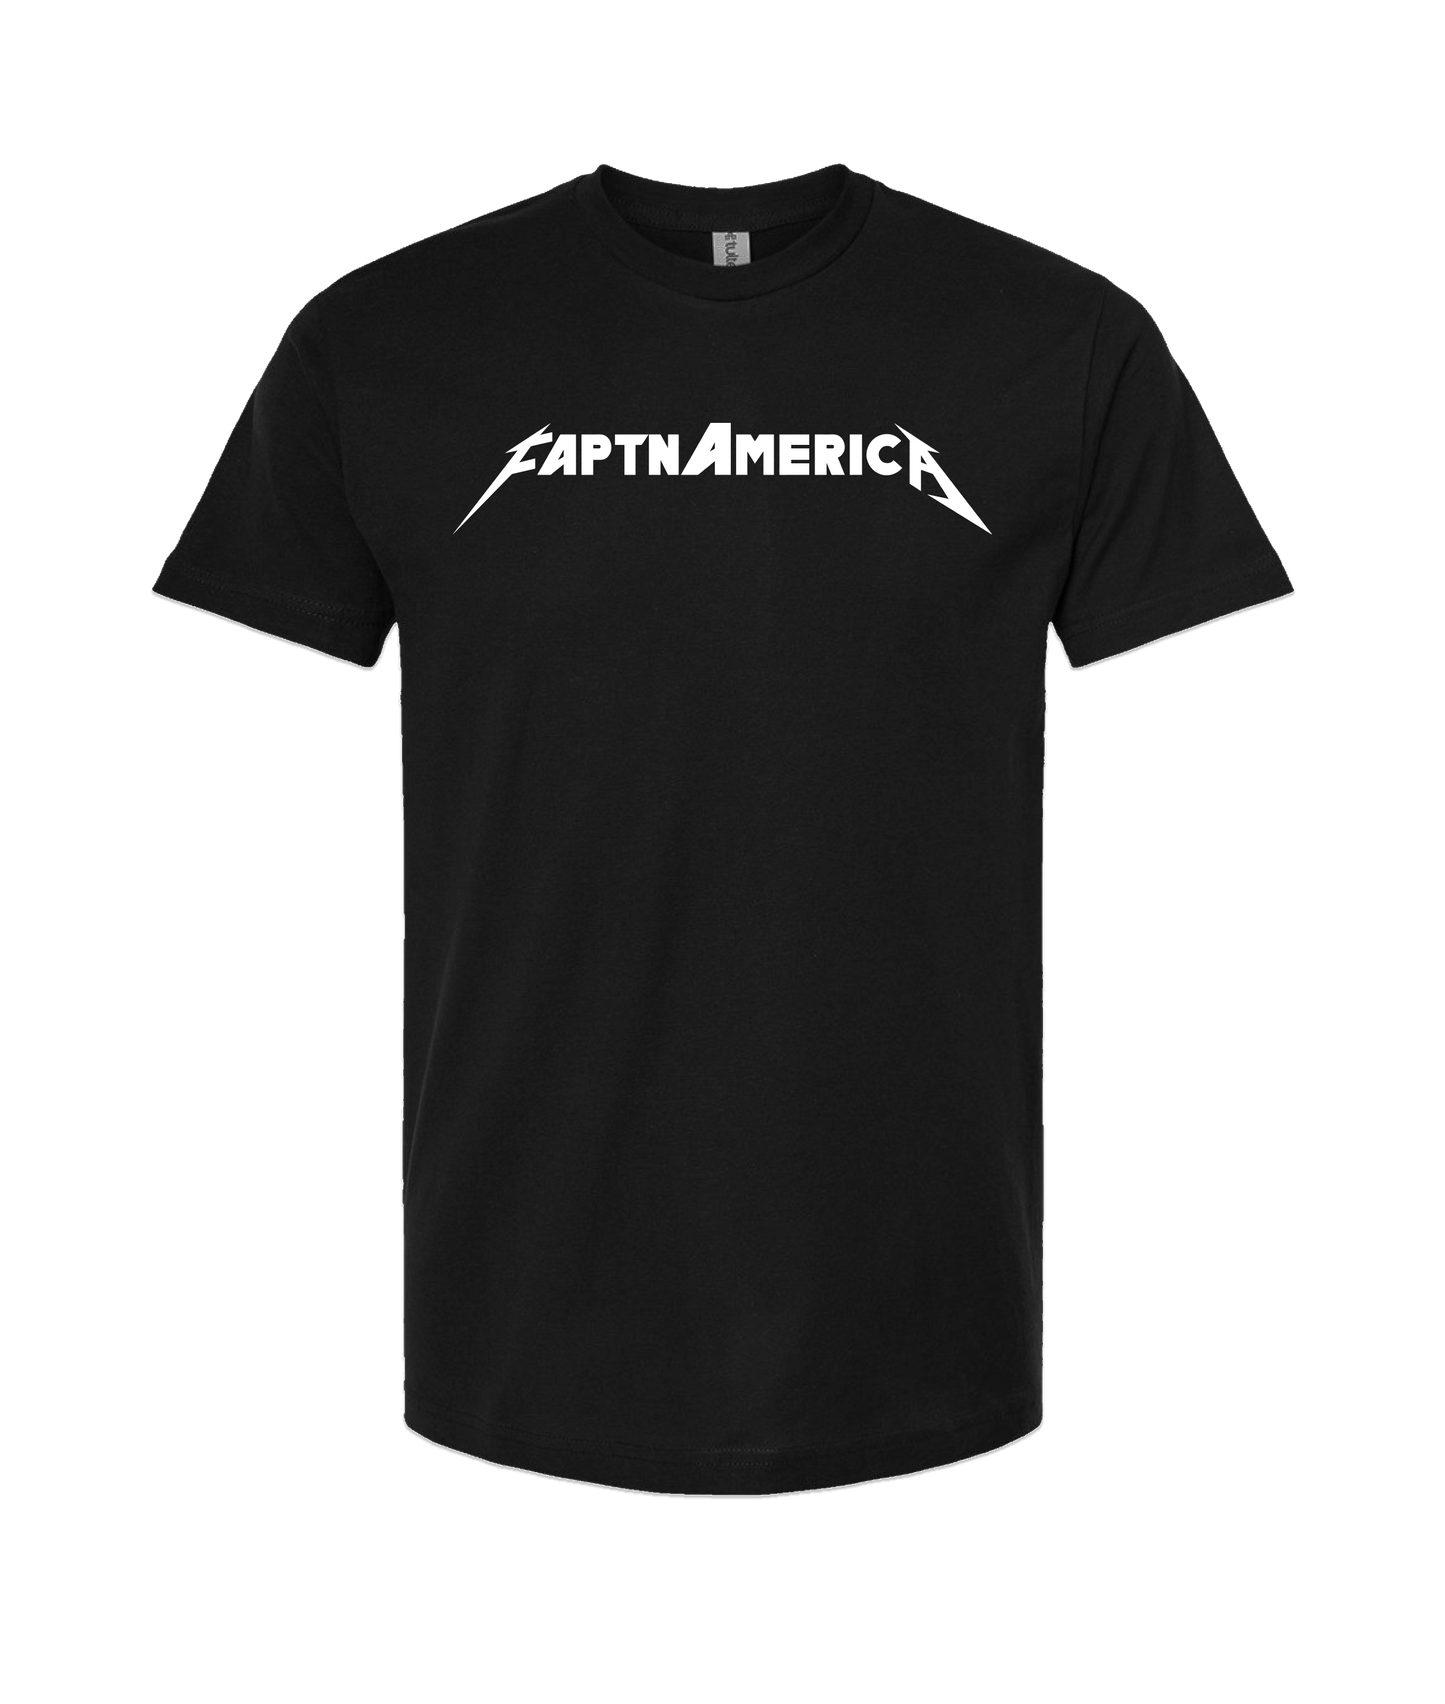 FaptnAmerica - Faptn METAL - Black T-Shirt